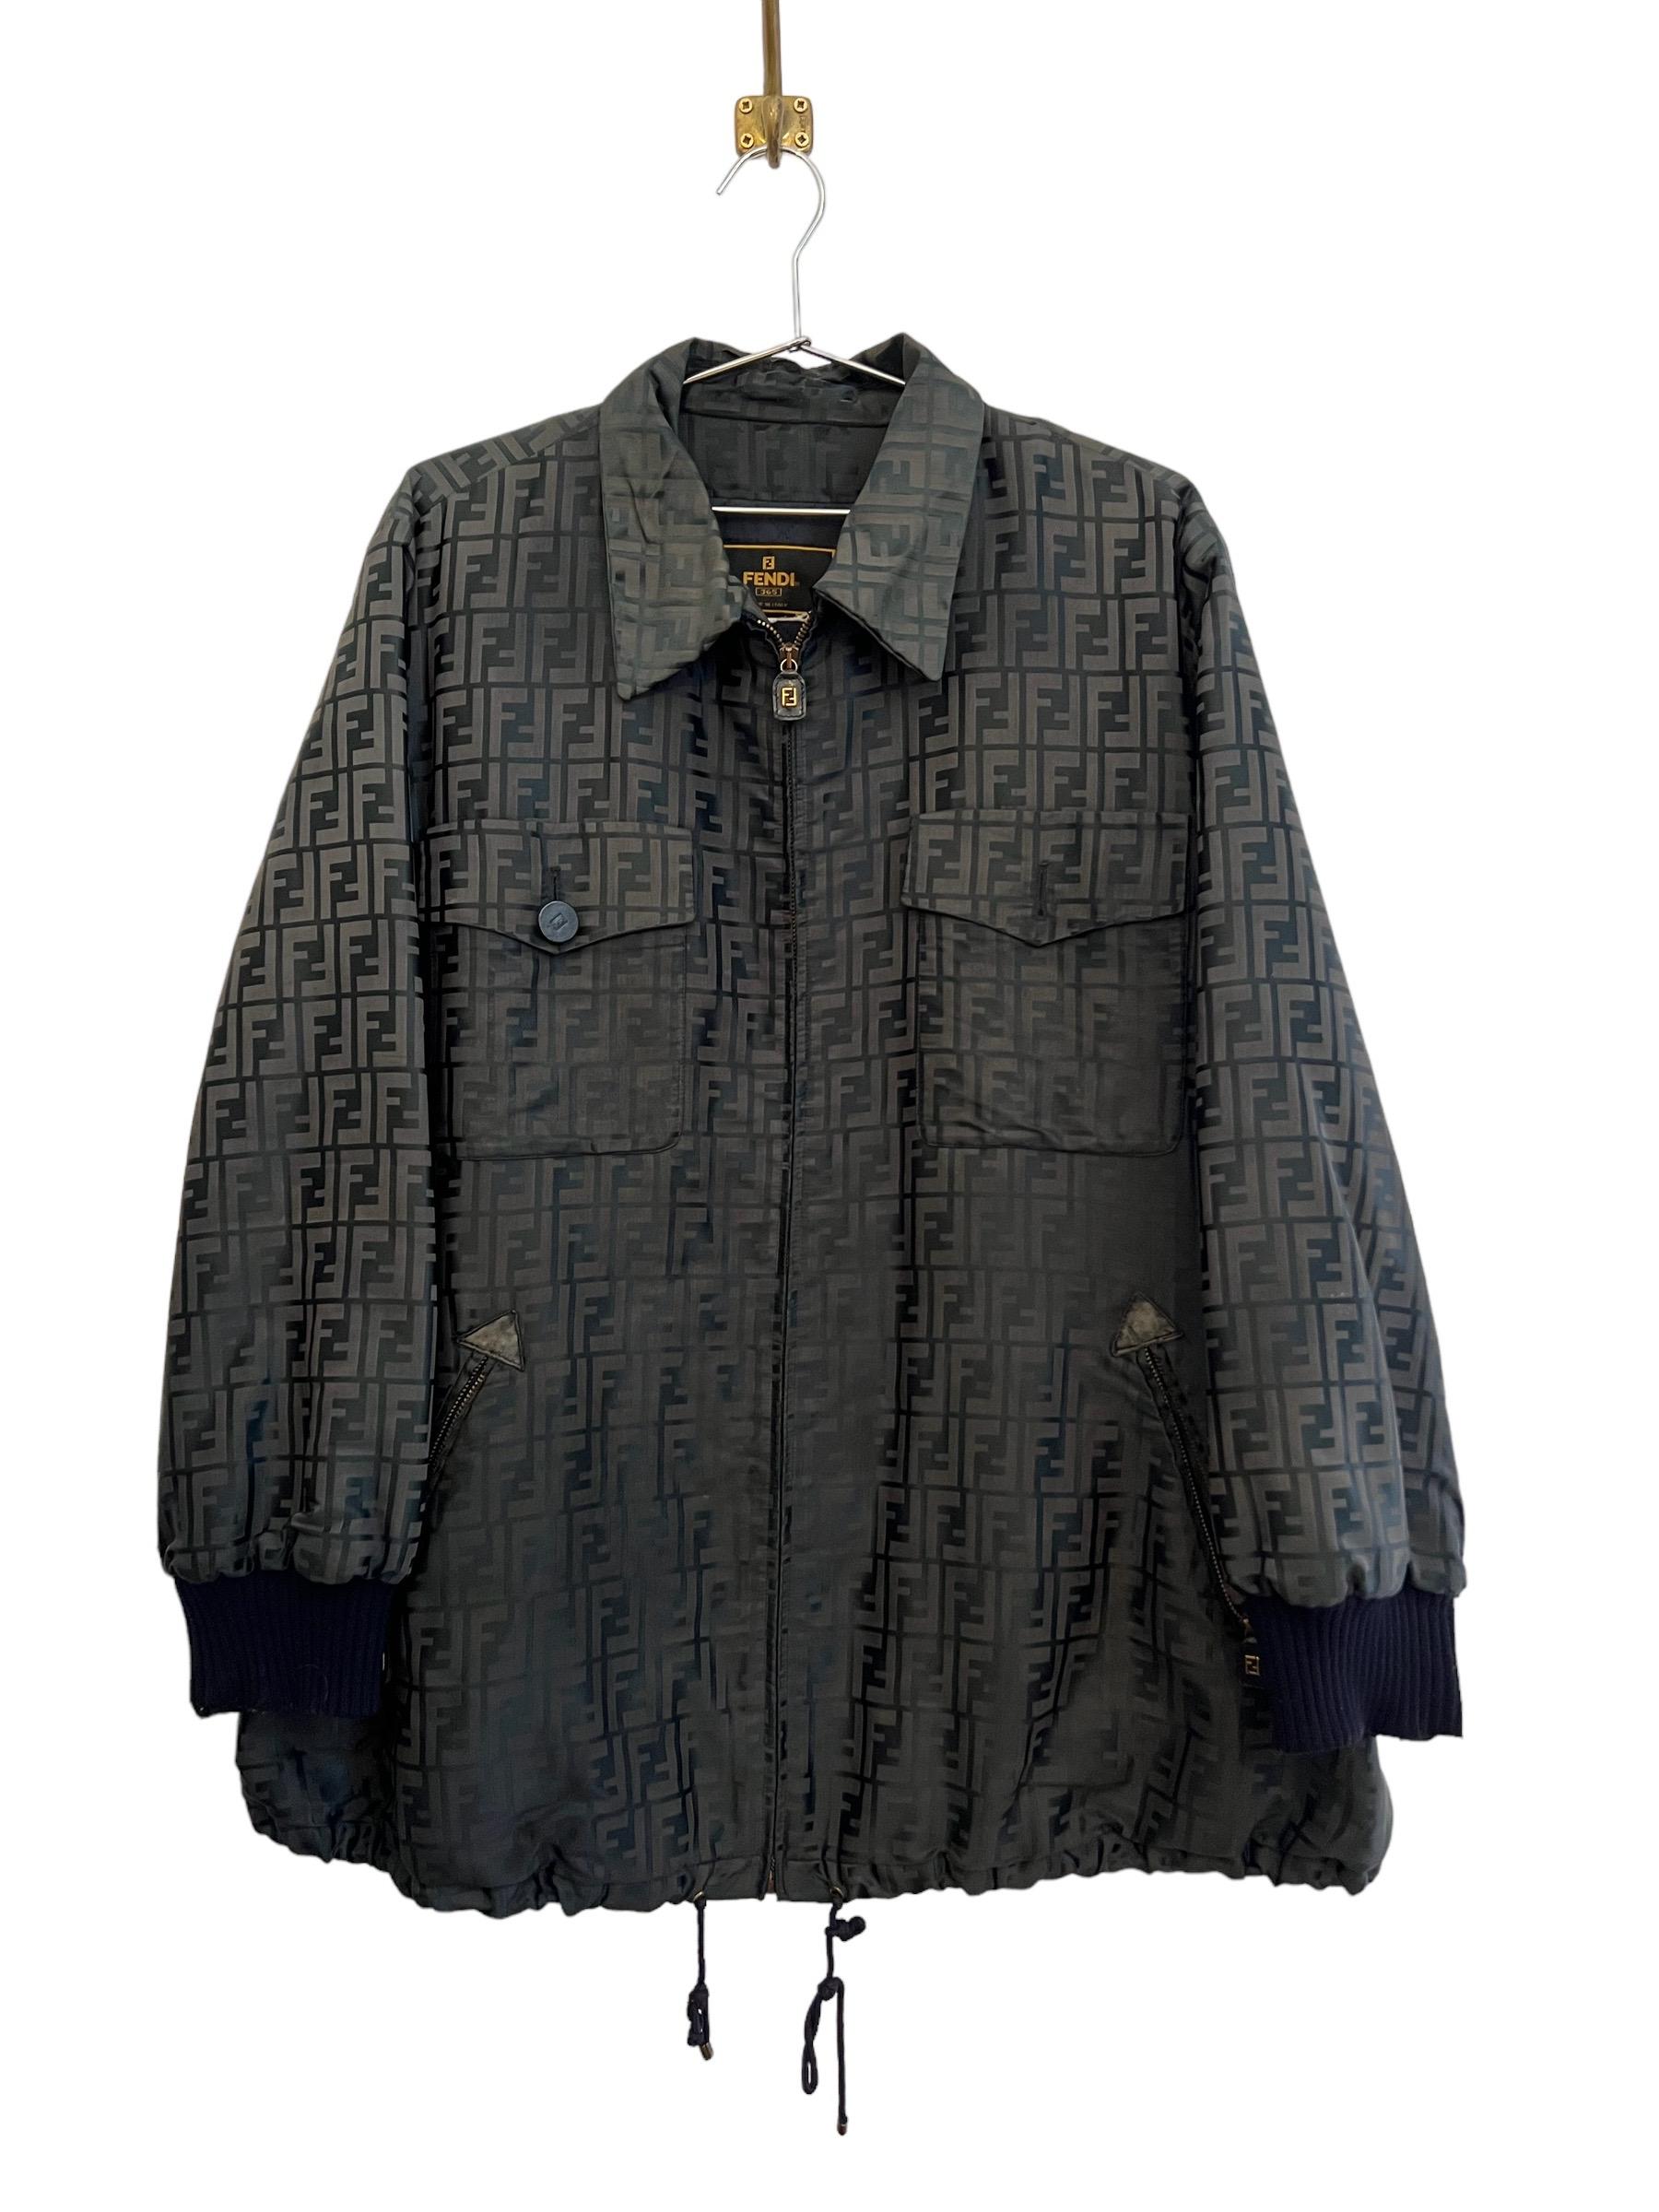 Vintage FENDI Jacquard FF Jacquard Zucca Jacket Coat For Sale 2